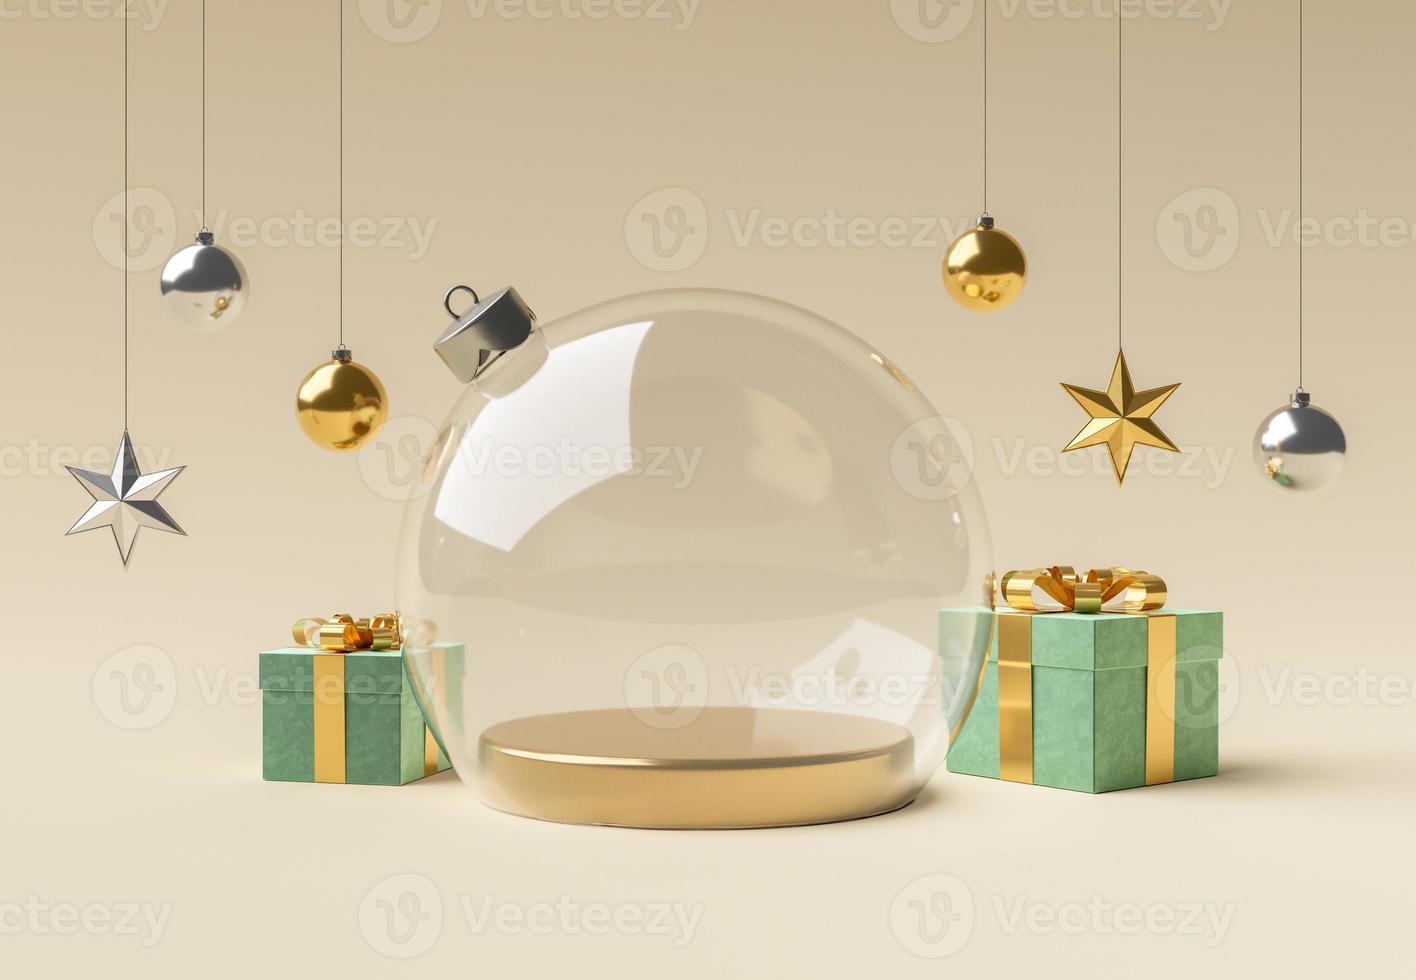 bola de natal de vidro vazio com enfeites para exposição de produtos foto